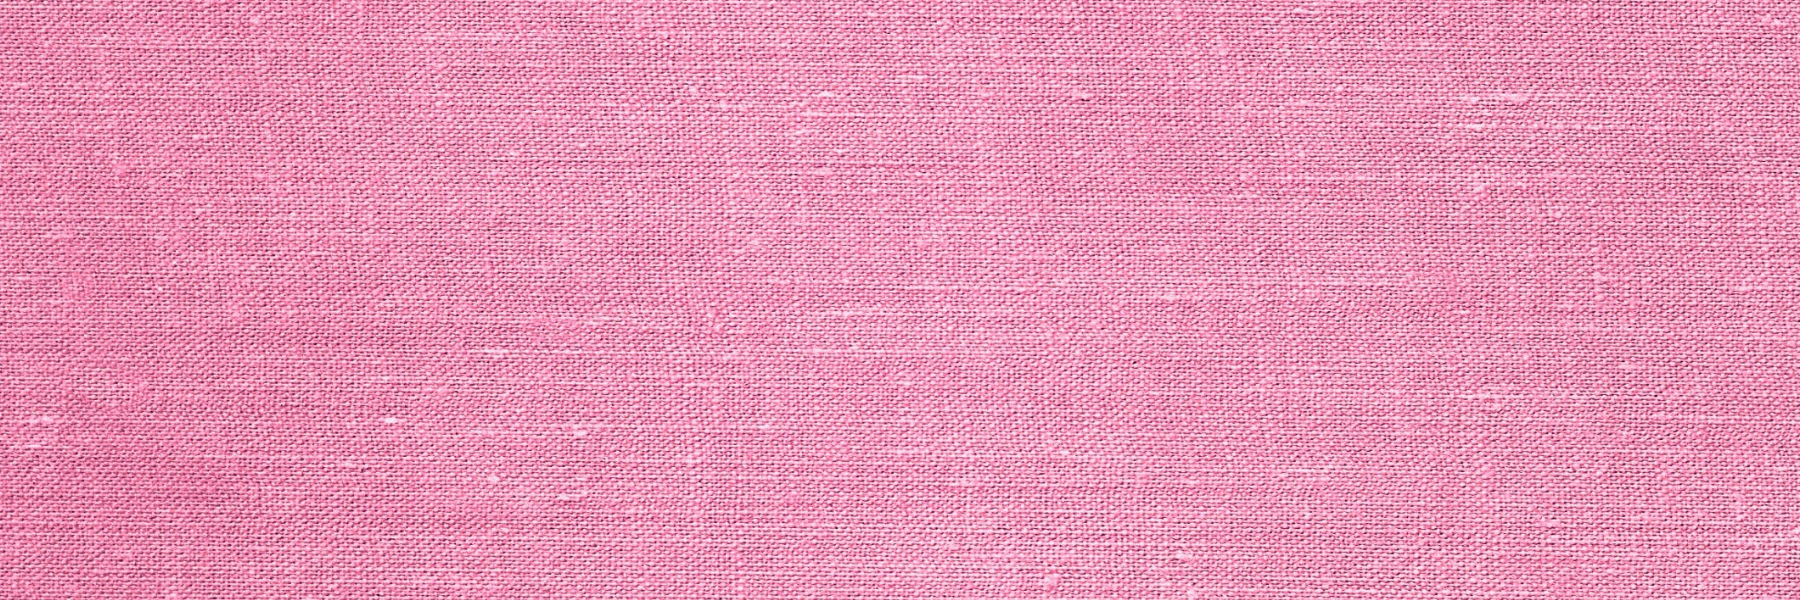 Pink Background - FRLA